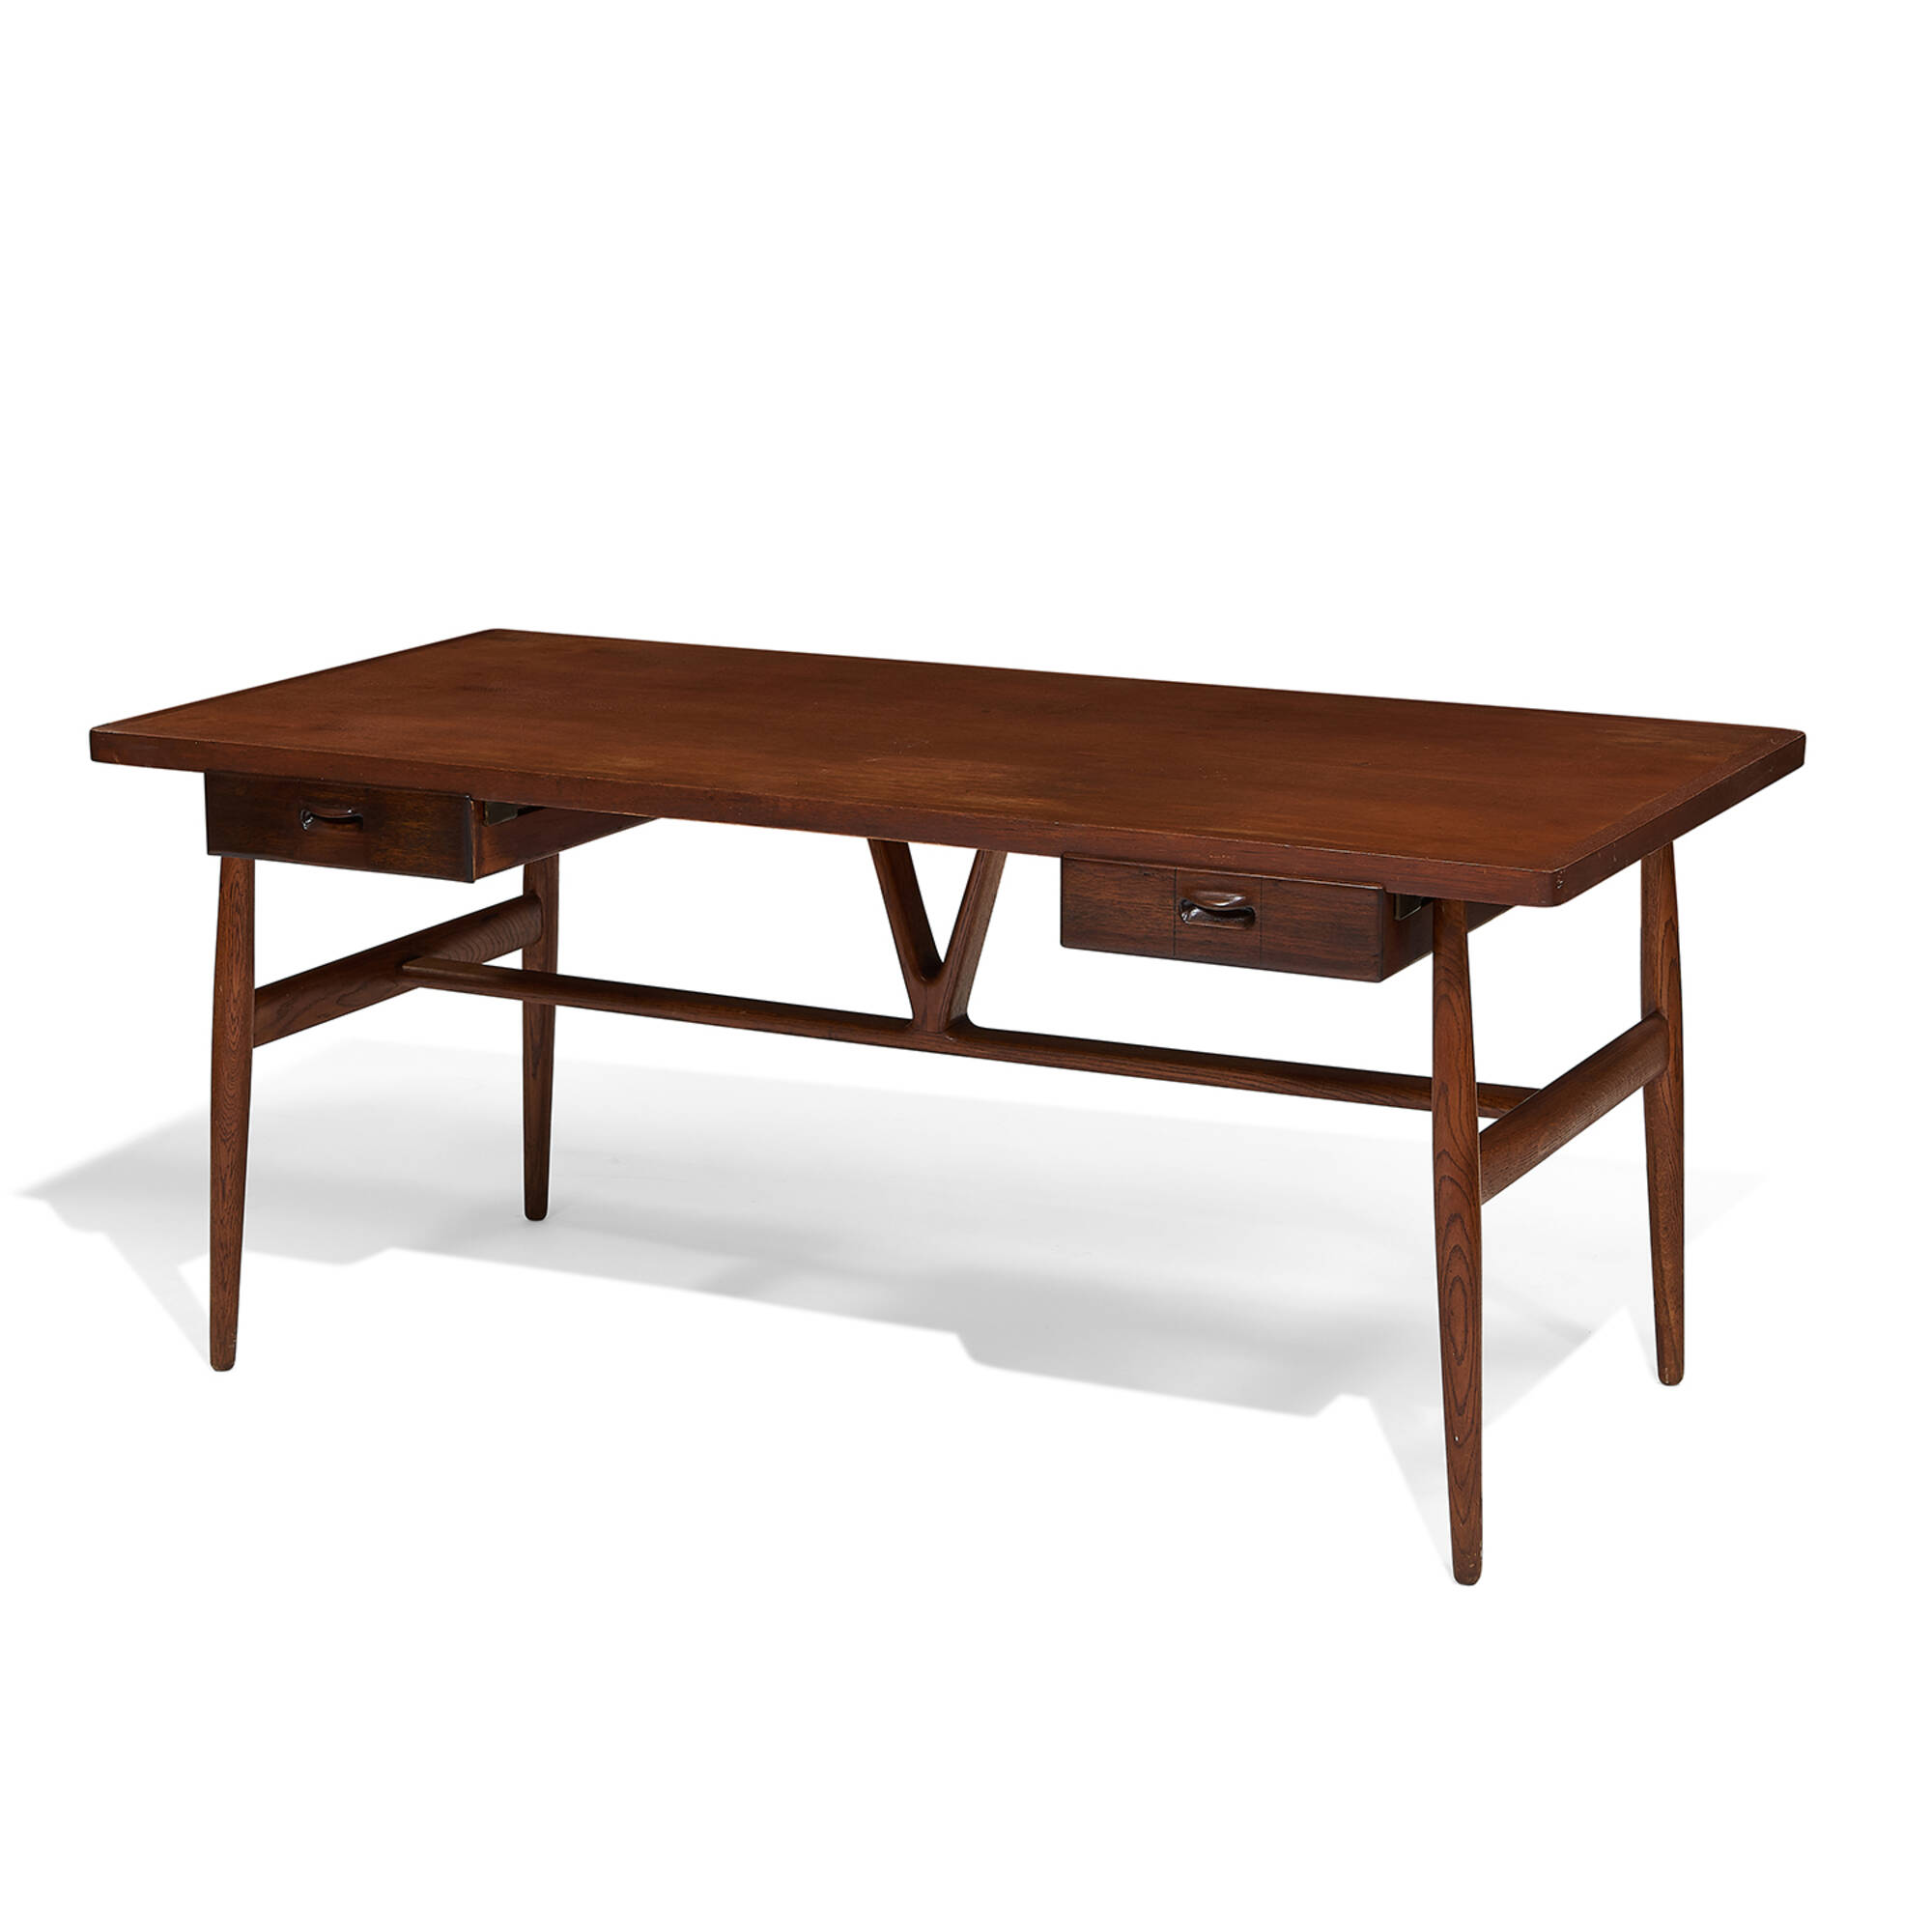 250: HANS J. WEGNER, Wishbone desk, model JH-563 < Art & Design, 2 